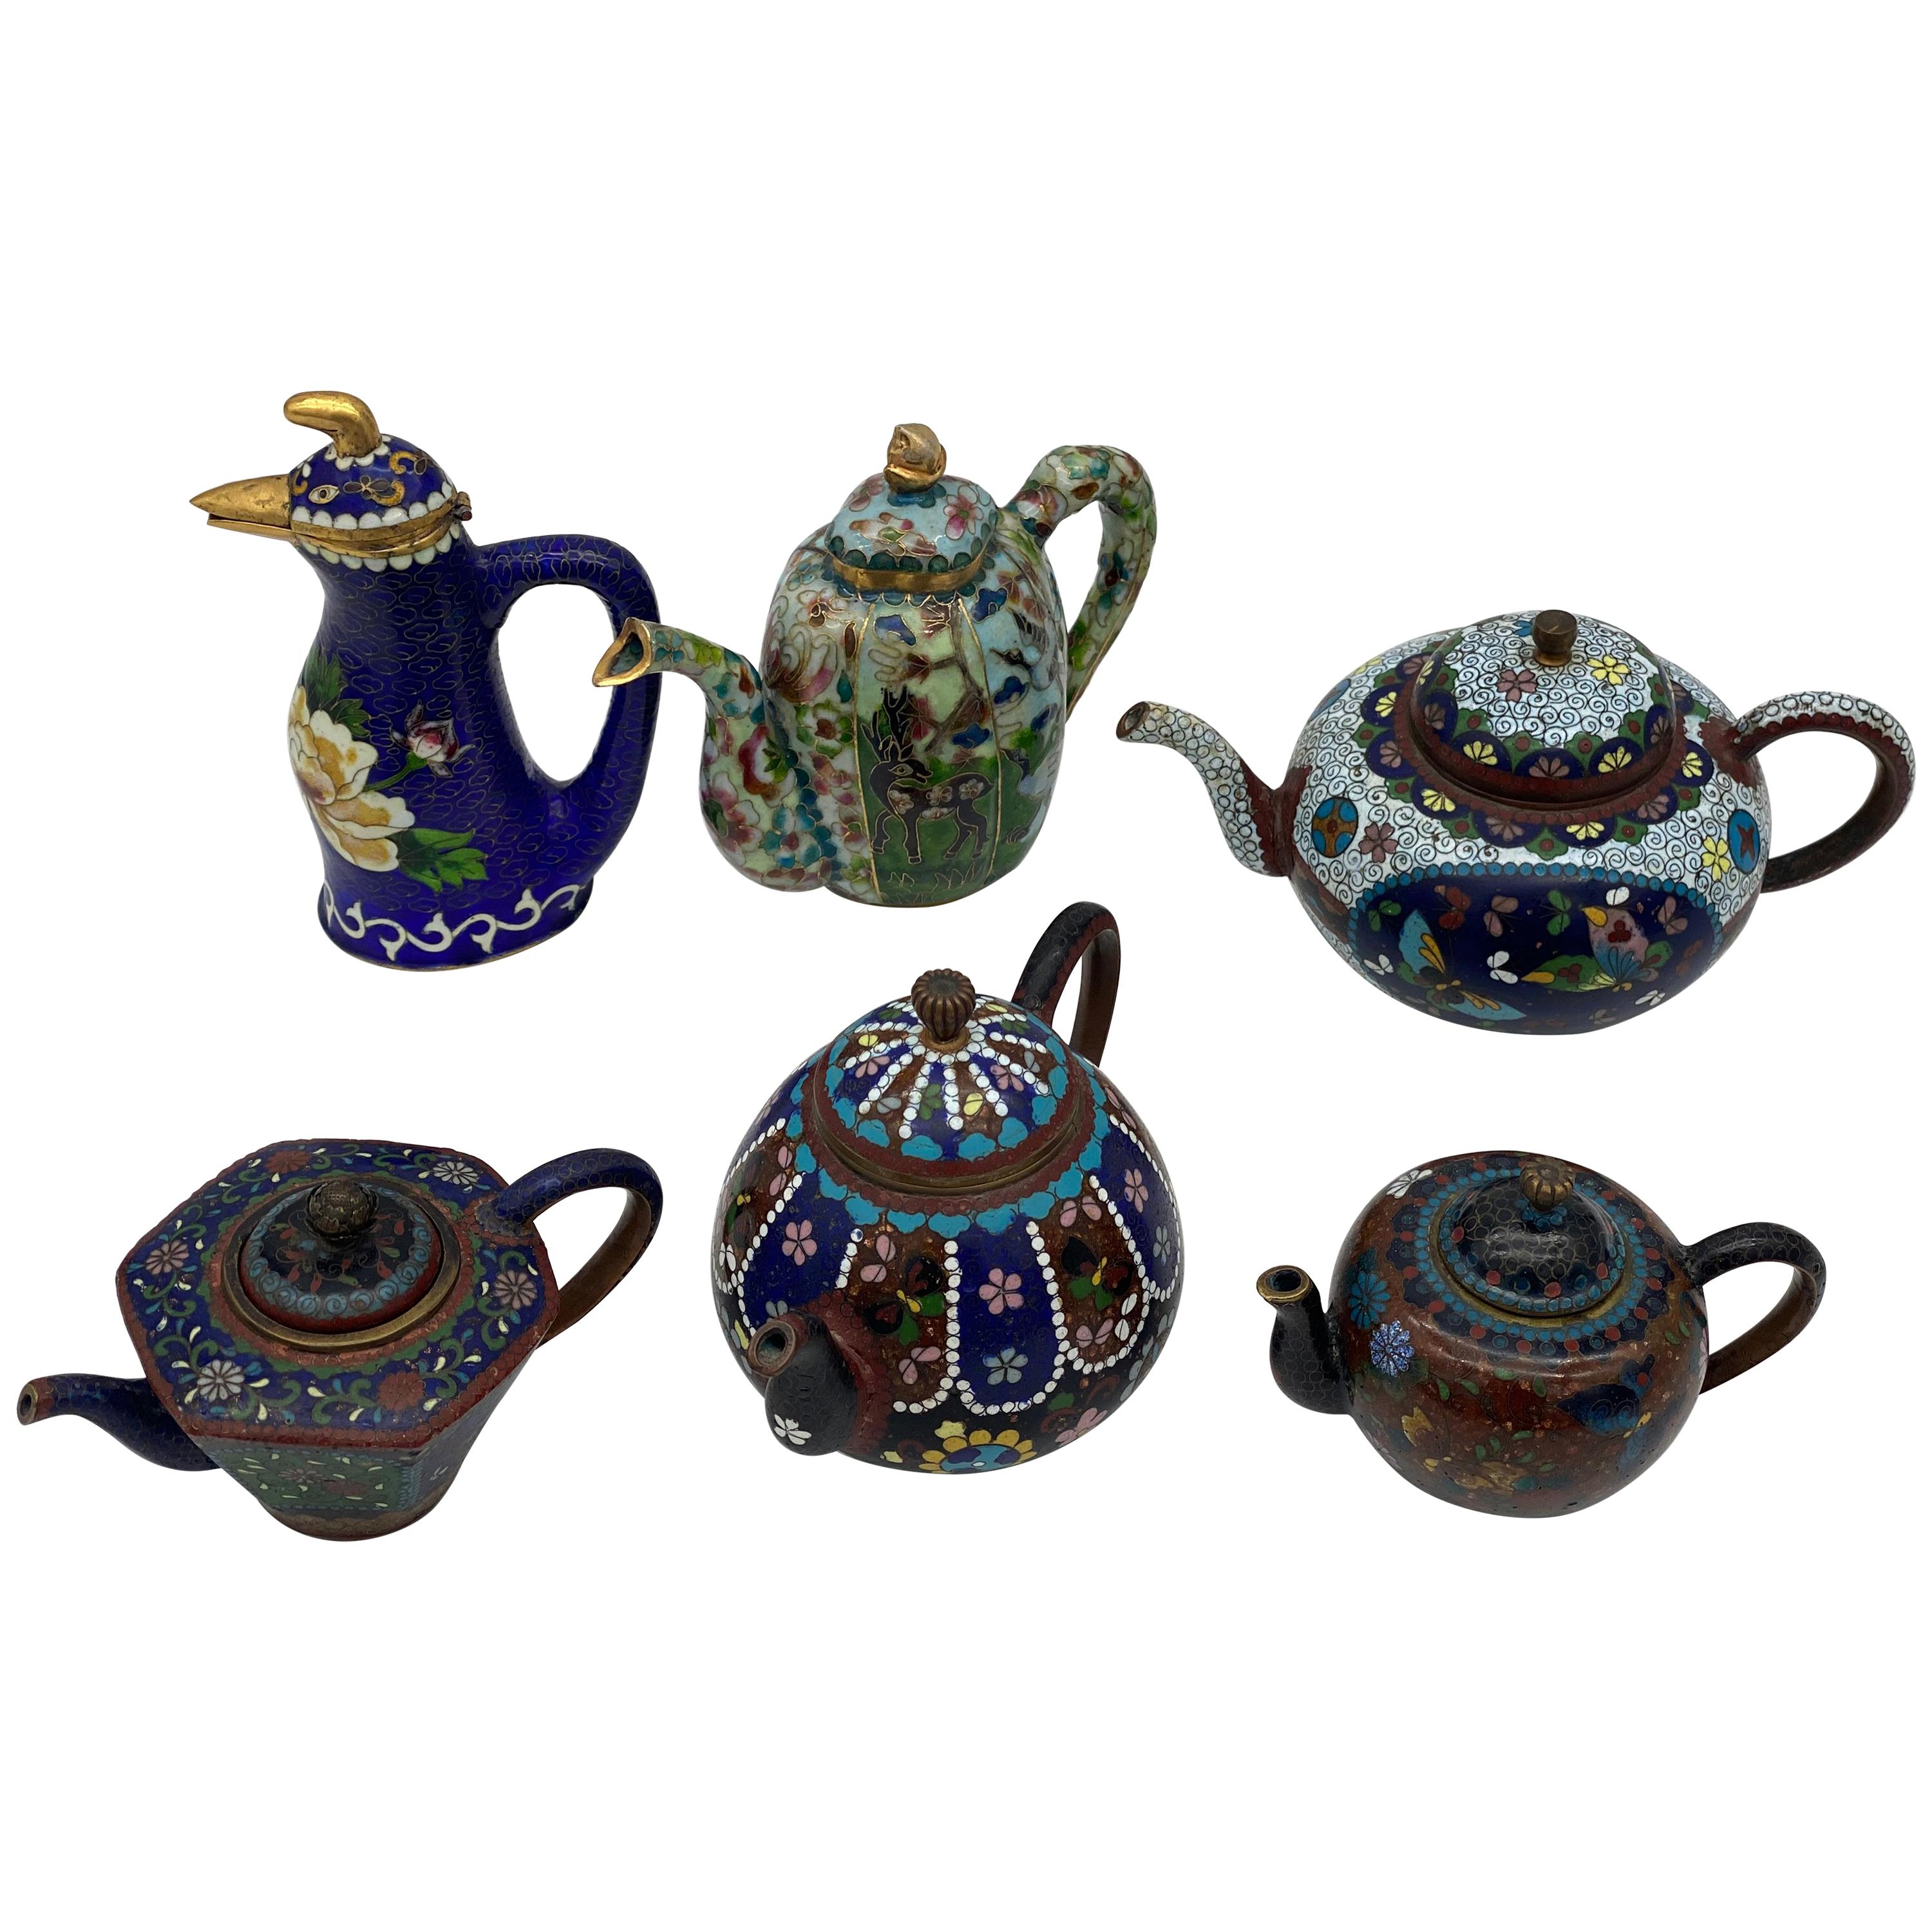 6 Antique Chinese Cloisonne Teapots